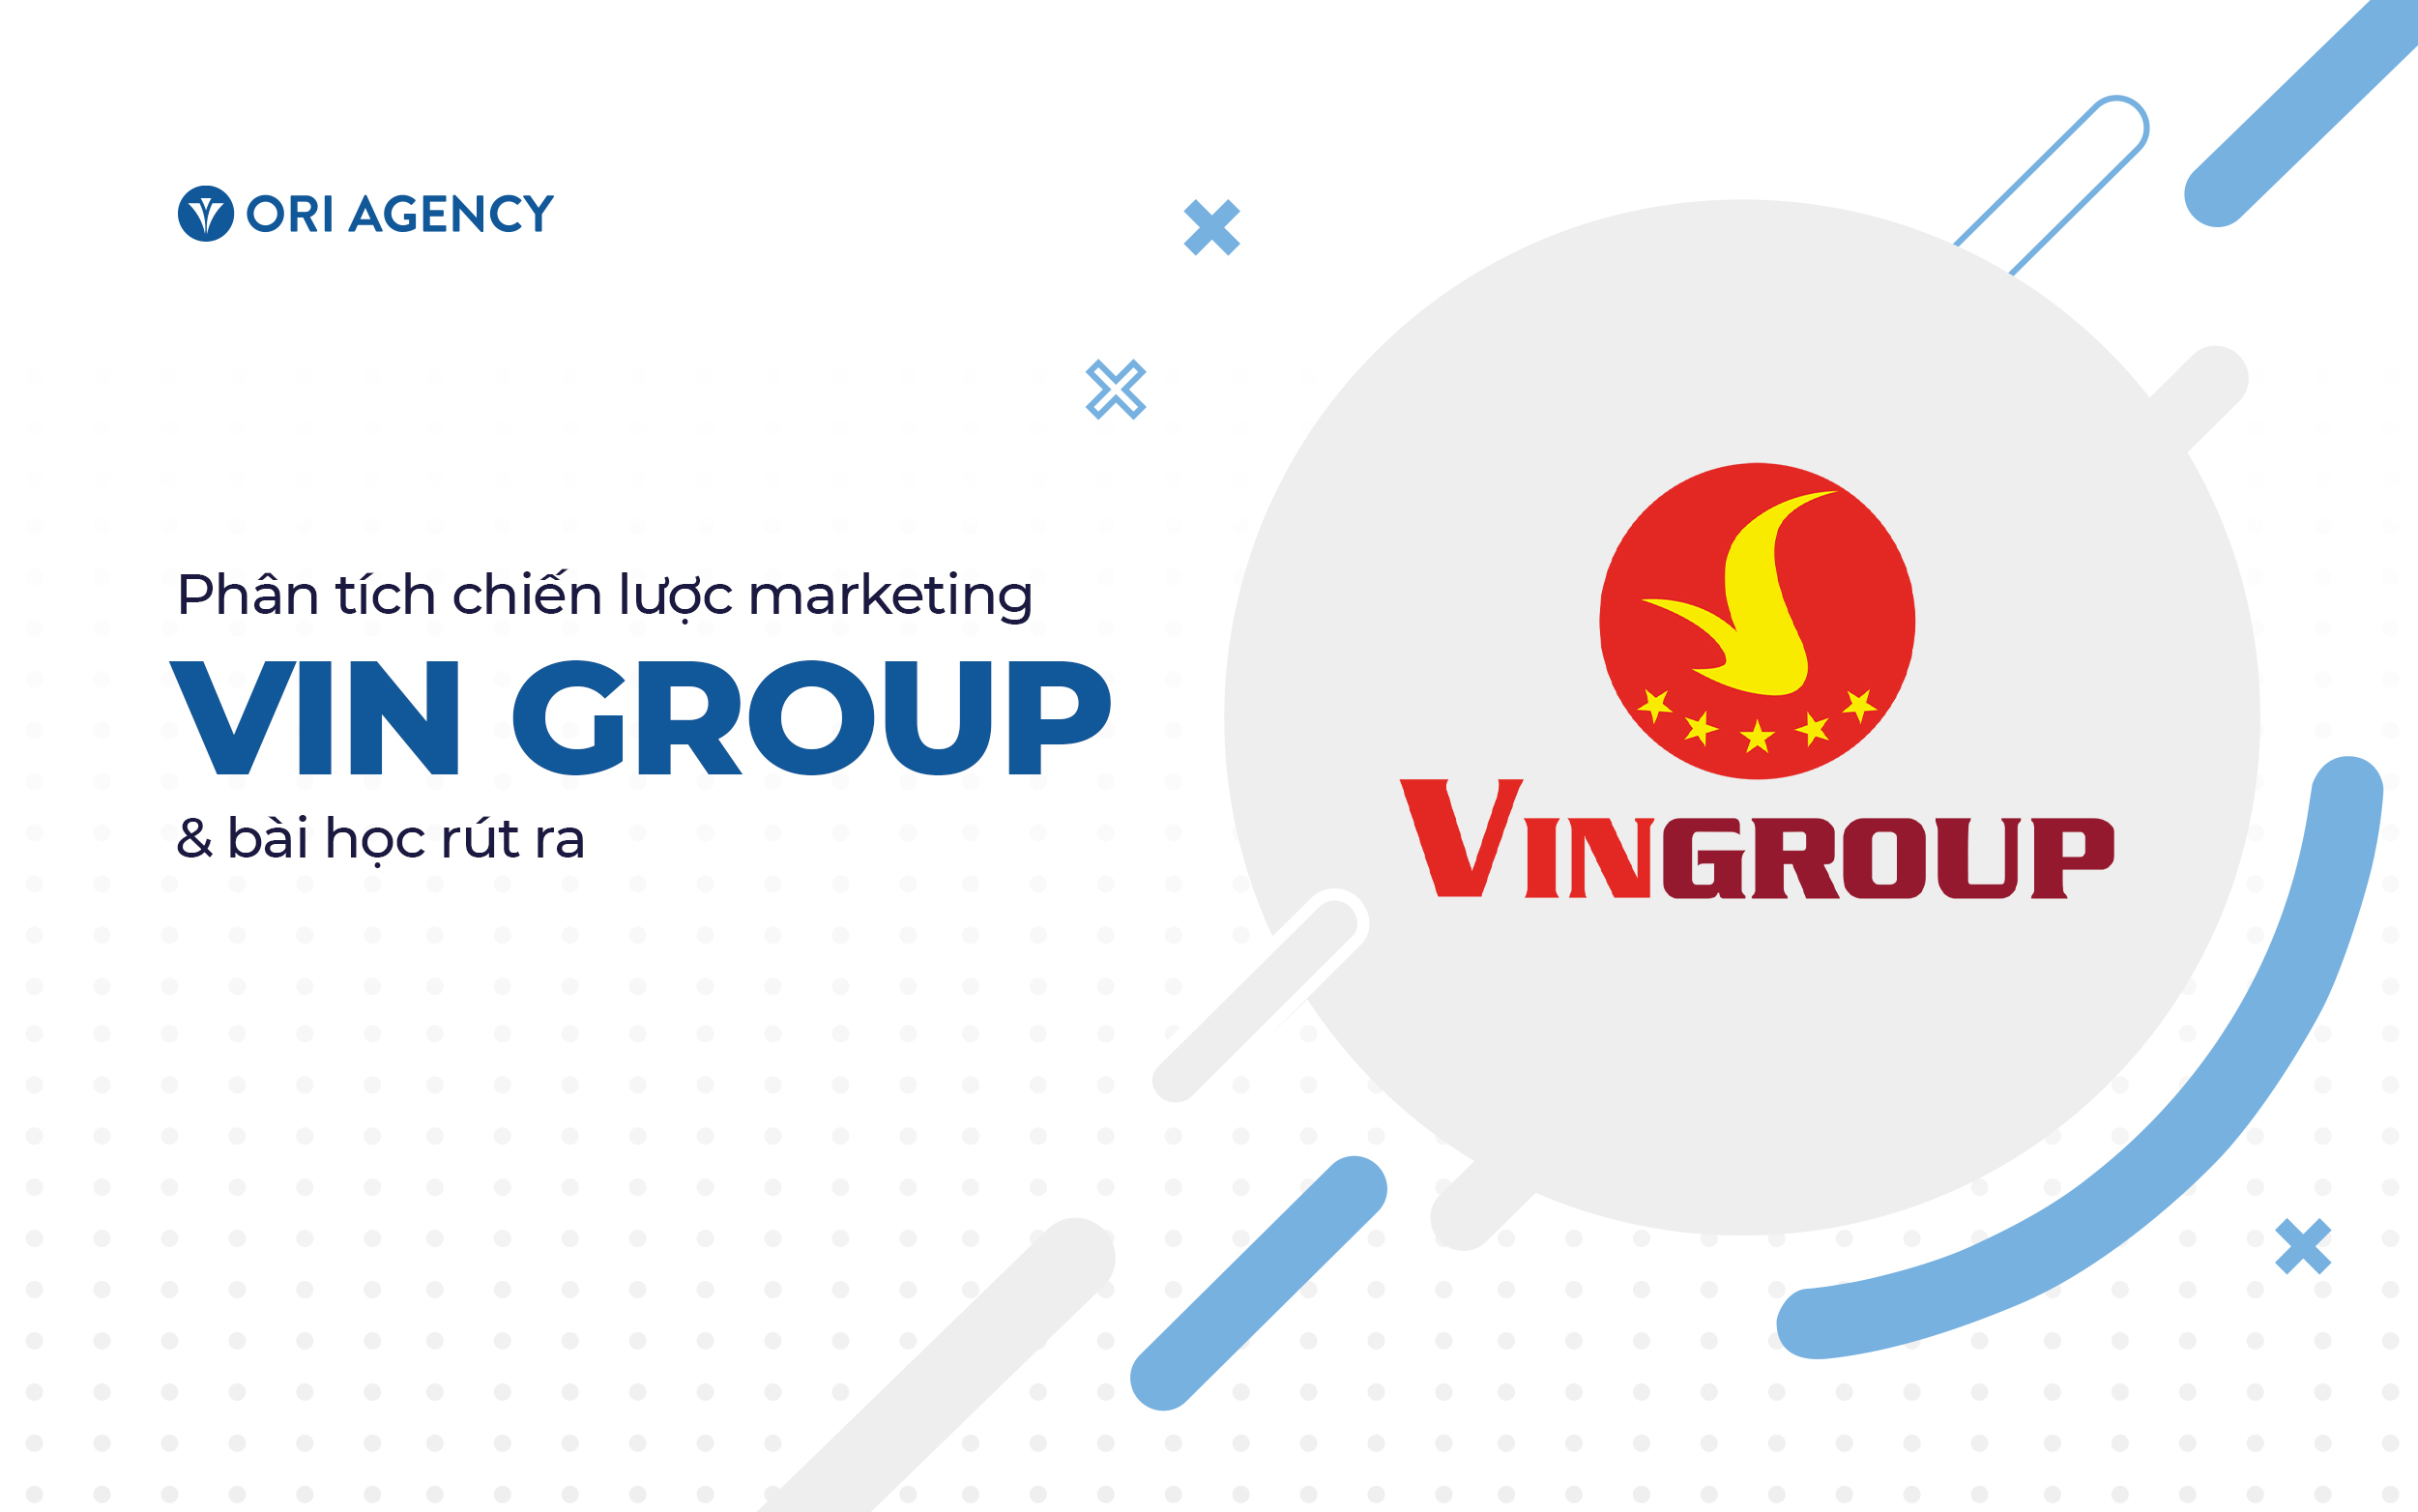 Phân tích chiến lược marketing của Vingroup & Bài học rút ra